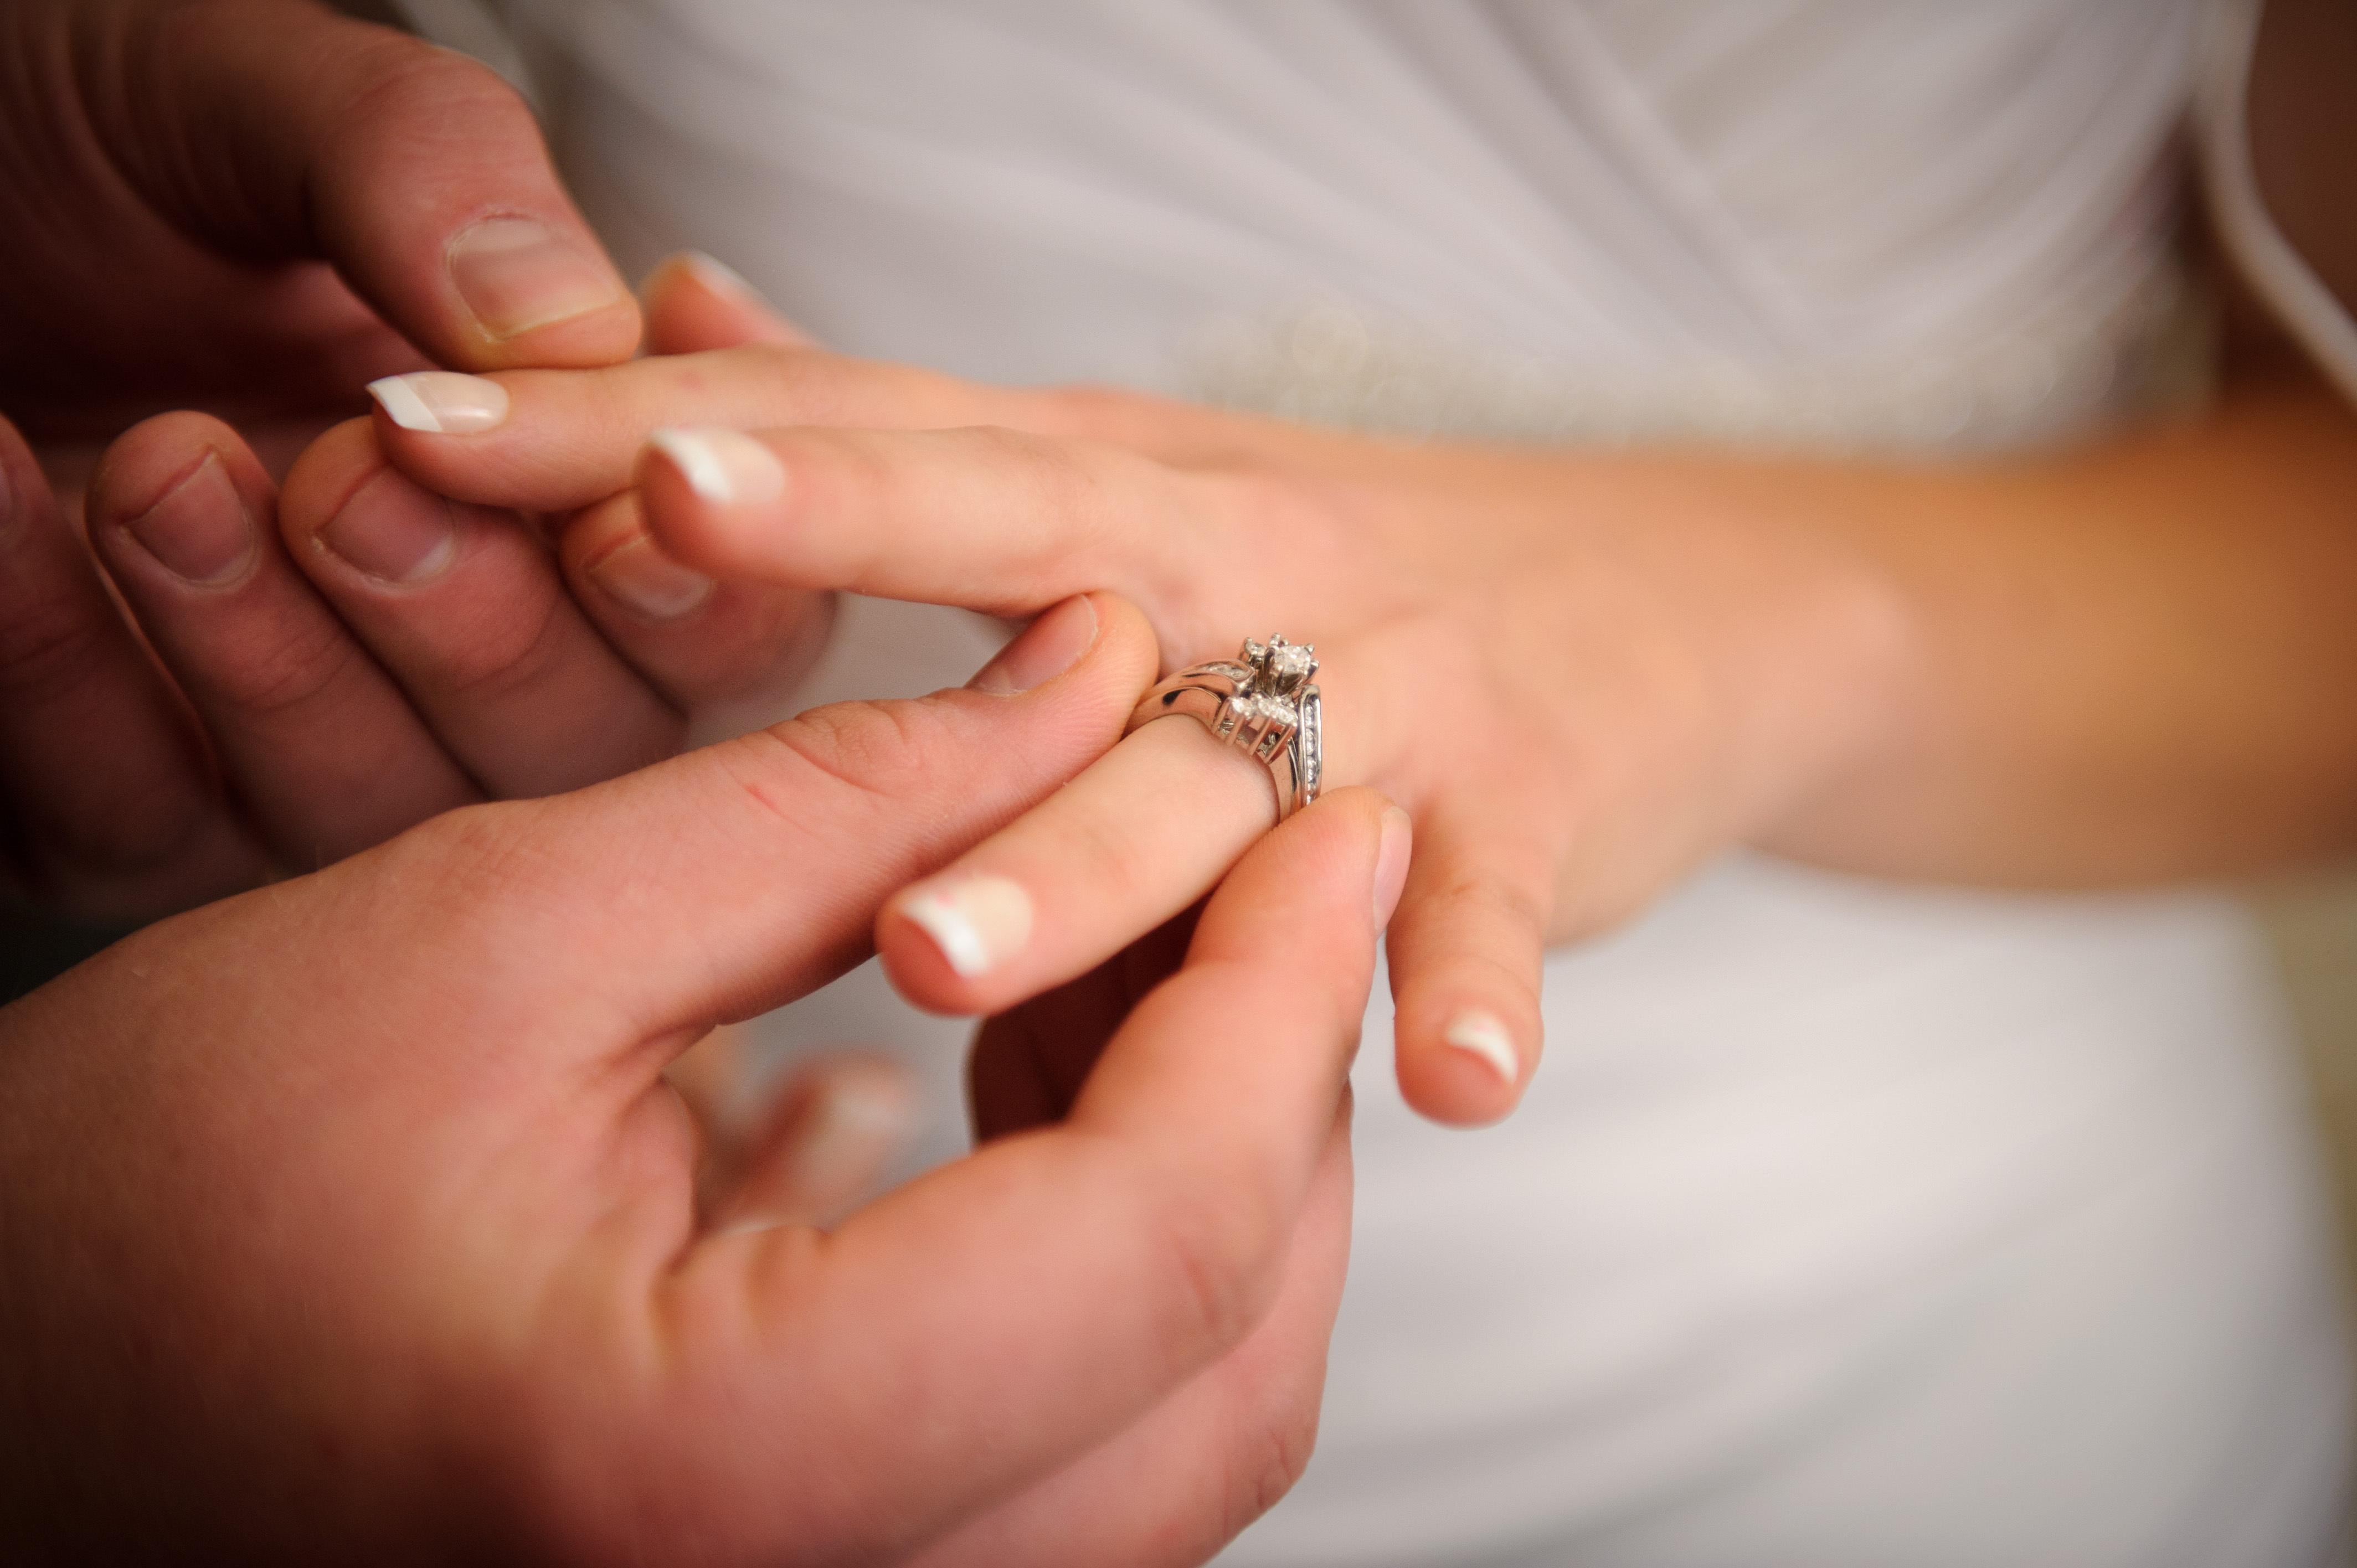 Даме пальчик. Надевает кольцо на палец. Обручальное кольцо. Обручальное кольцо на пальце. Обручальные кольца на руках.